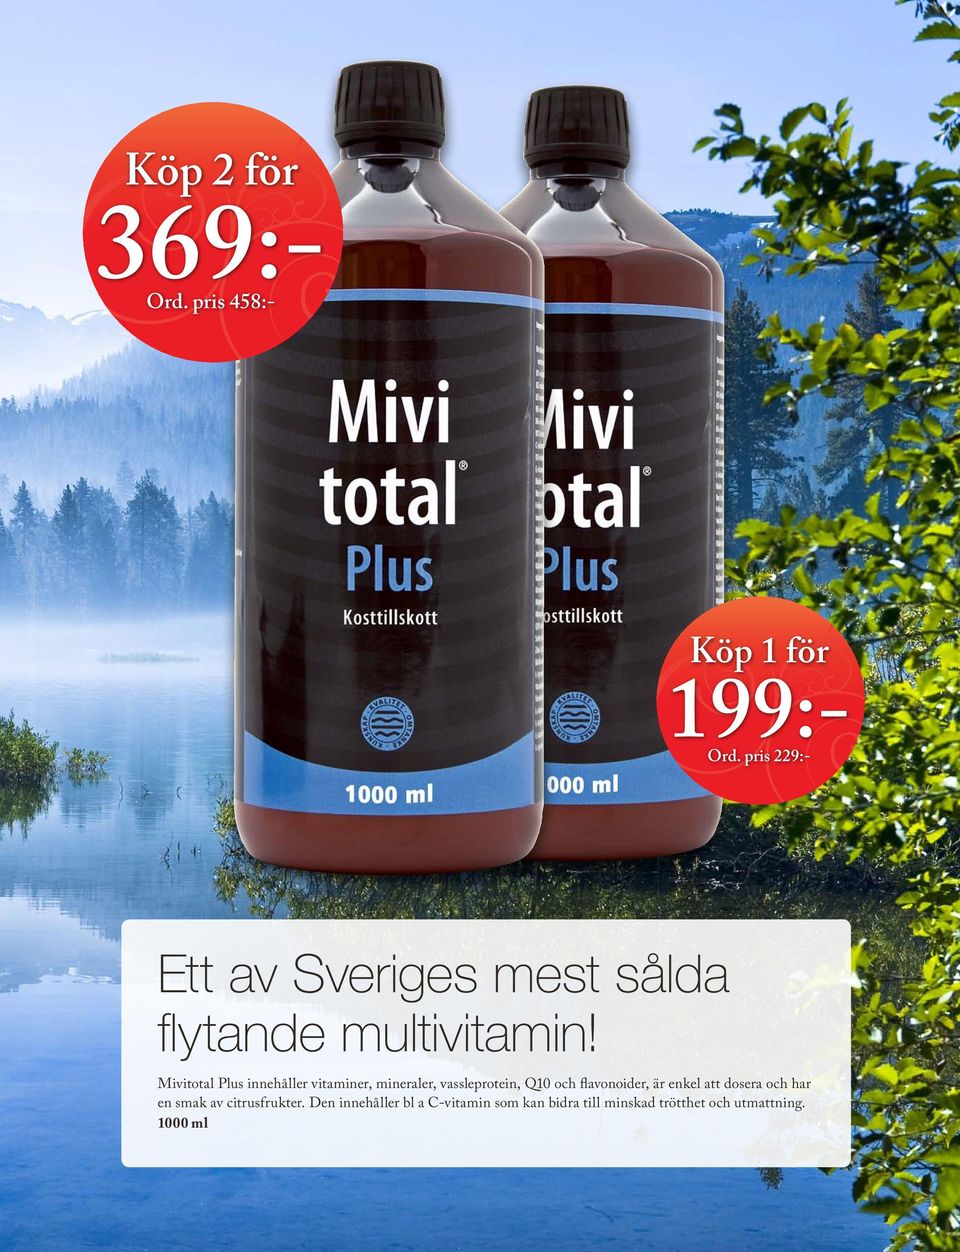 Mivitotal Plus innehåller vitaminer, mineraler, vassleprotein, Q10 och flavonoider,